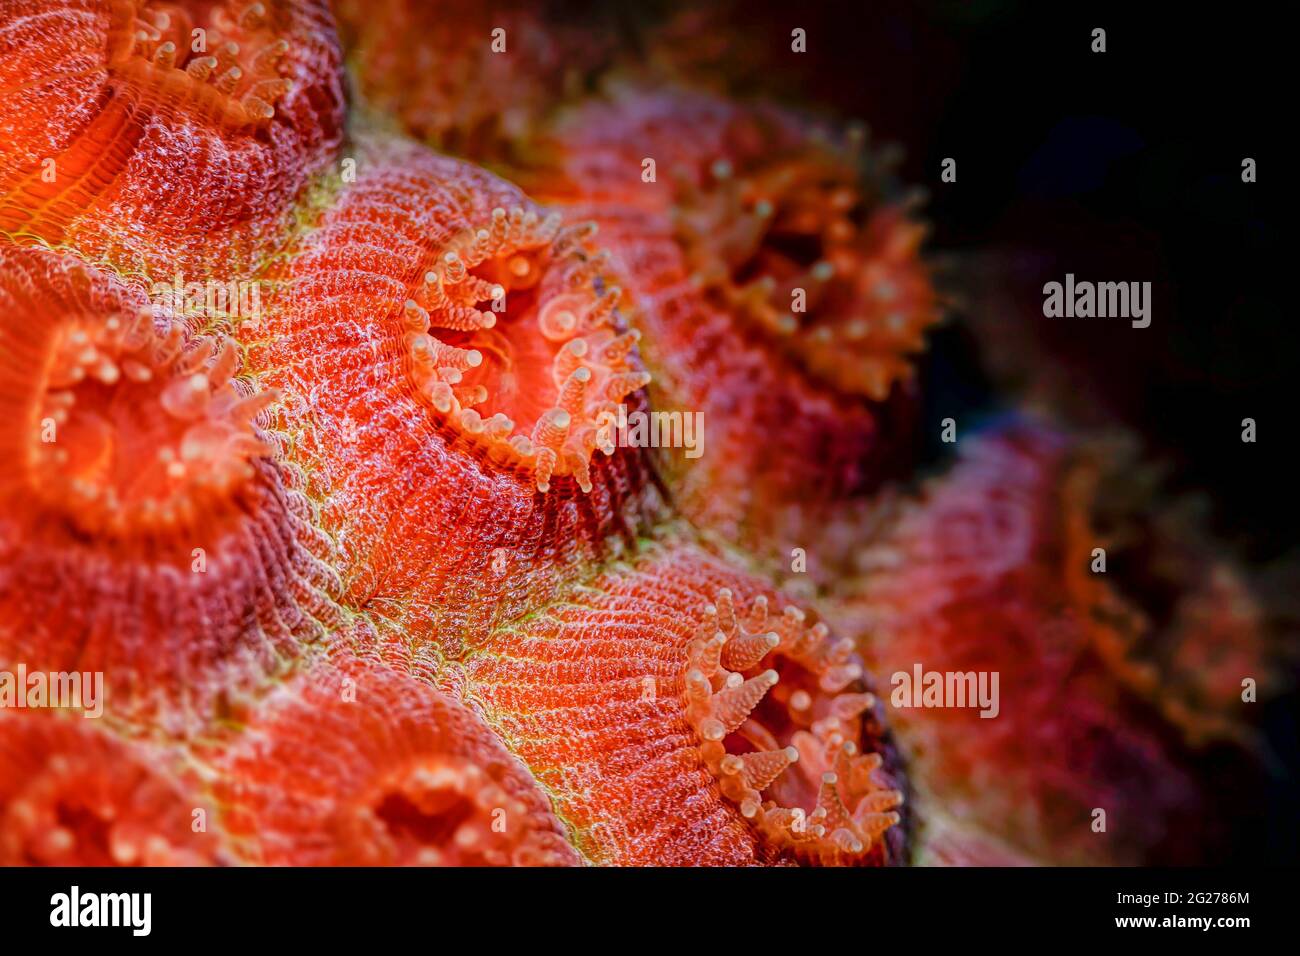 Coppa di corallo polipi a Bonaire, Caraibi Paesi Bassi. Foto Stock